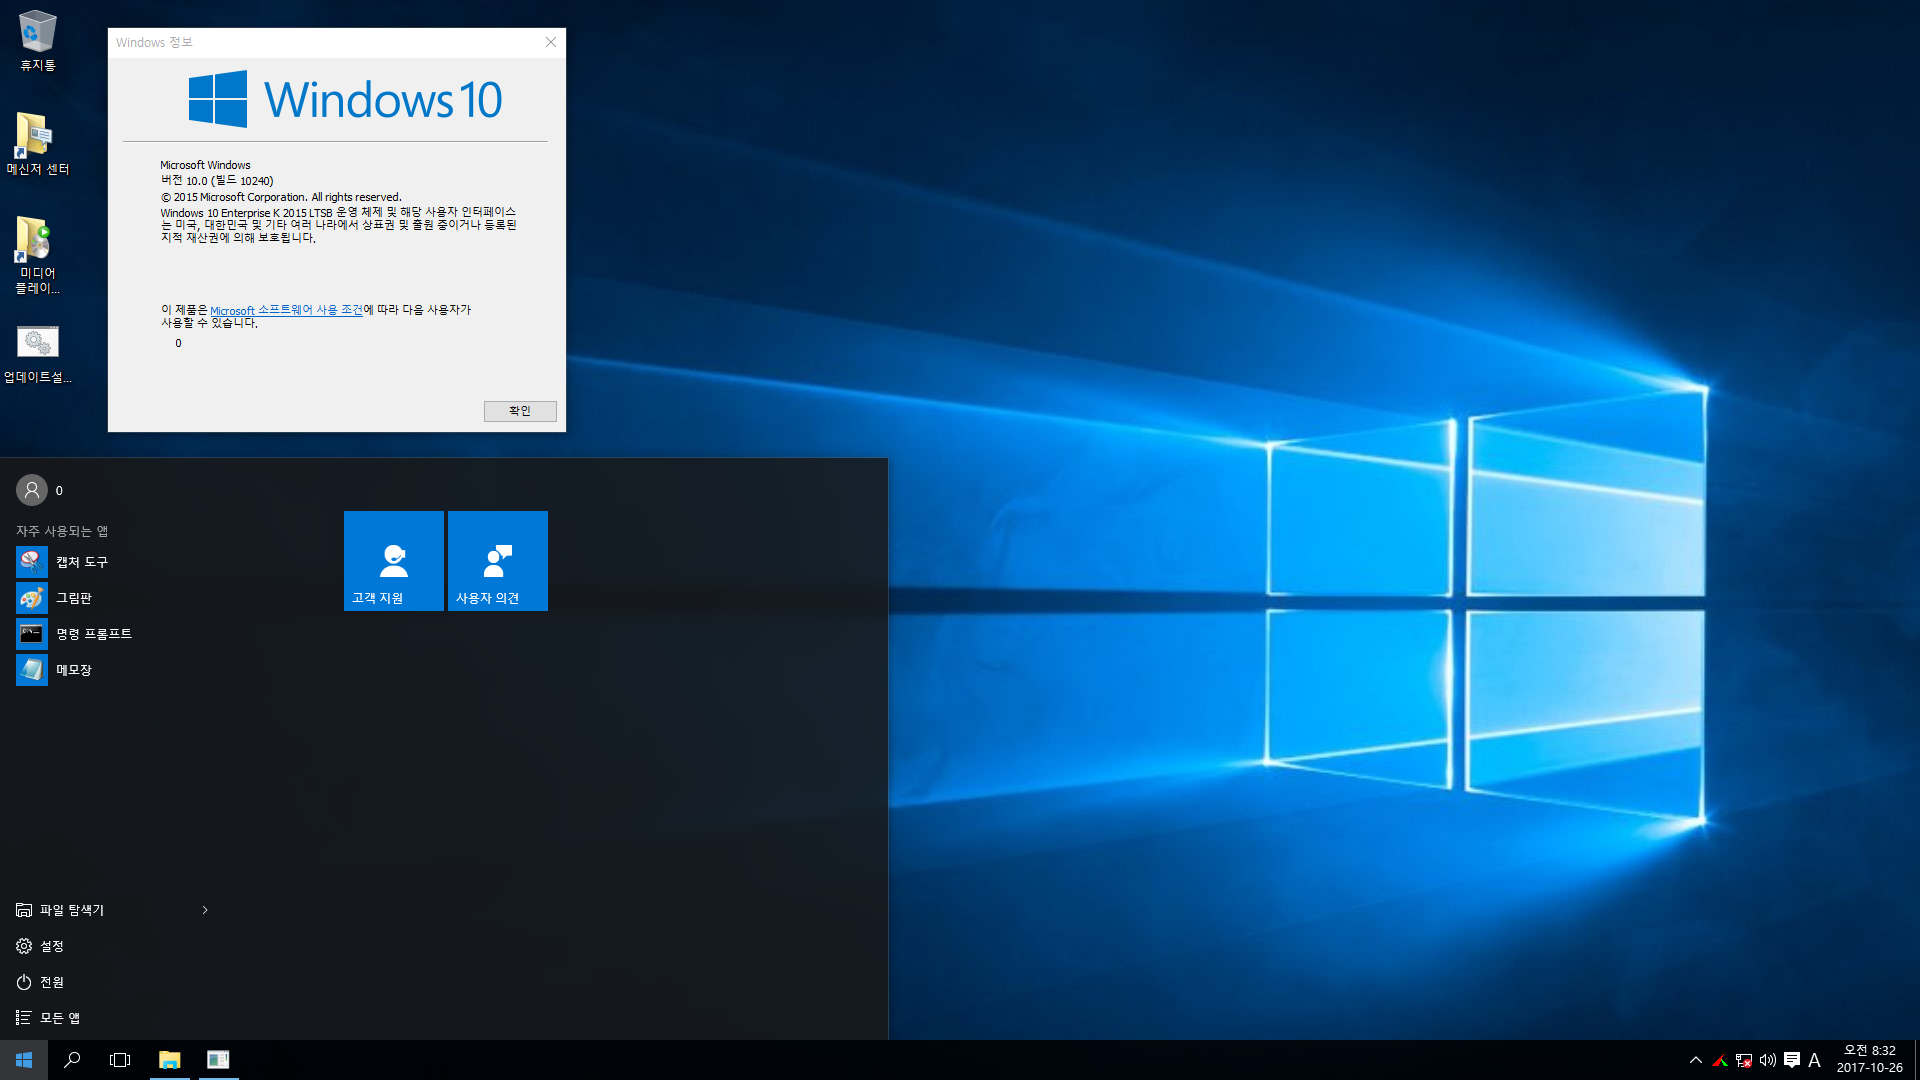 윈도10 실사용 설치 기록- Windows 10 Enterprise 2015 LTSB - 단촐하네요 2017-10-26_083210.png